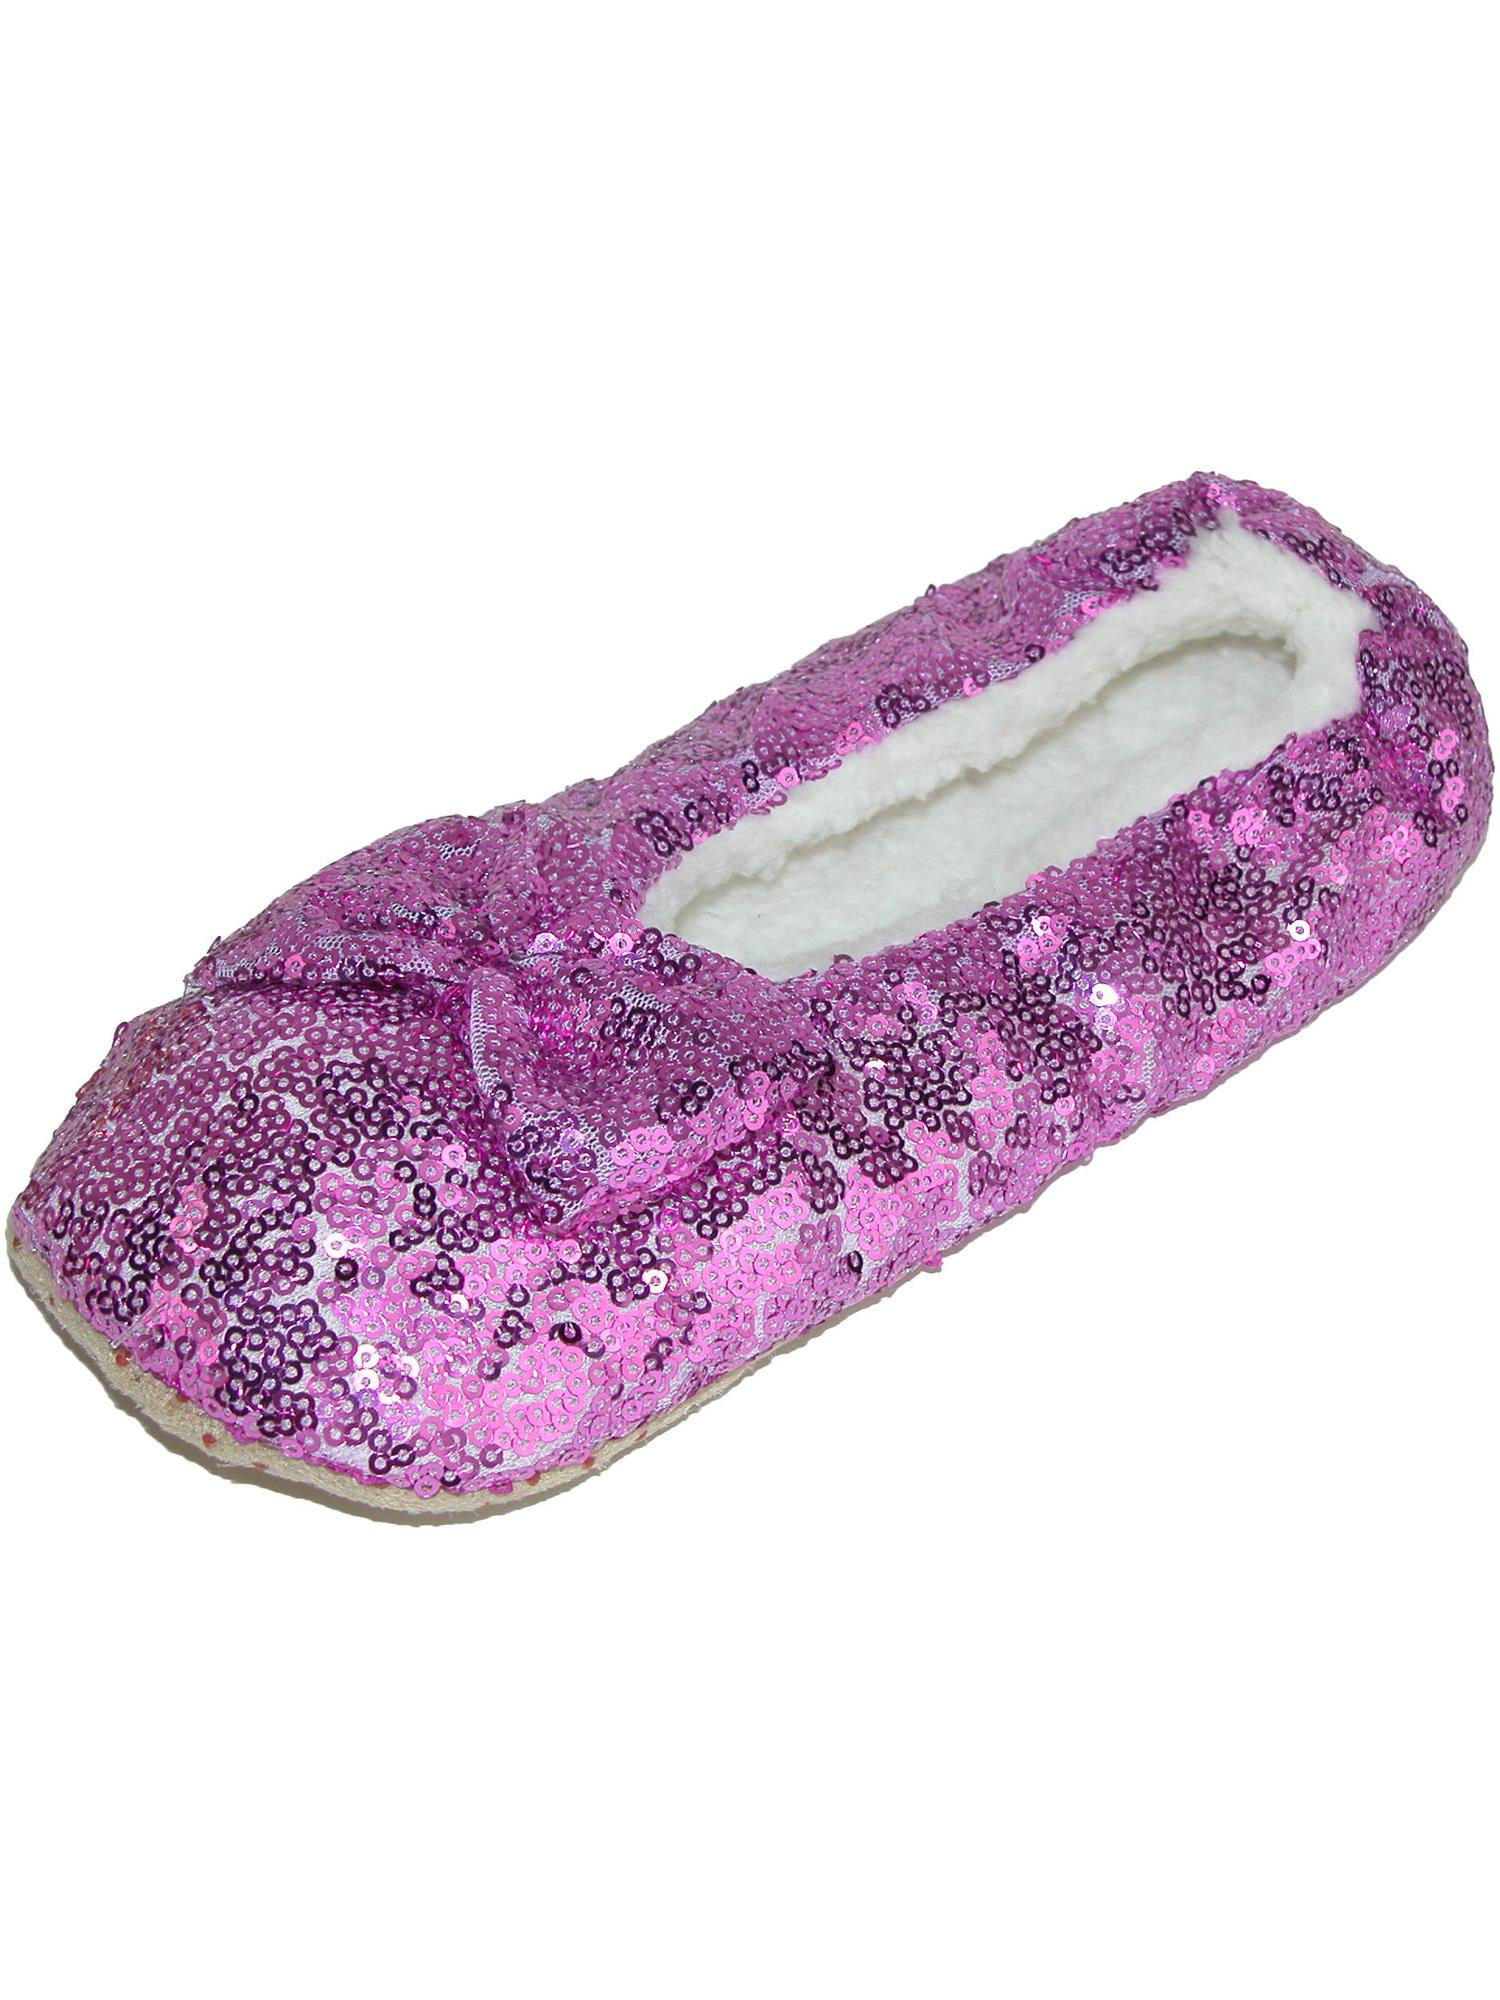 women's sequin slippers